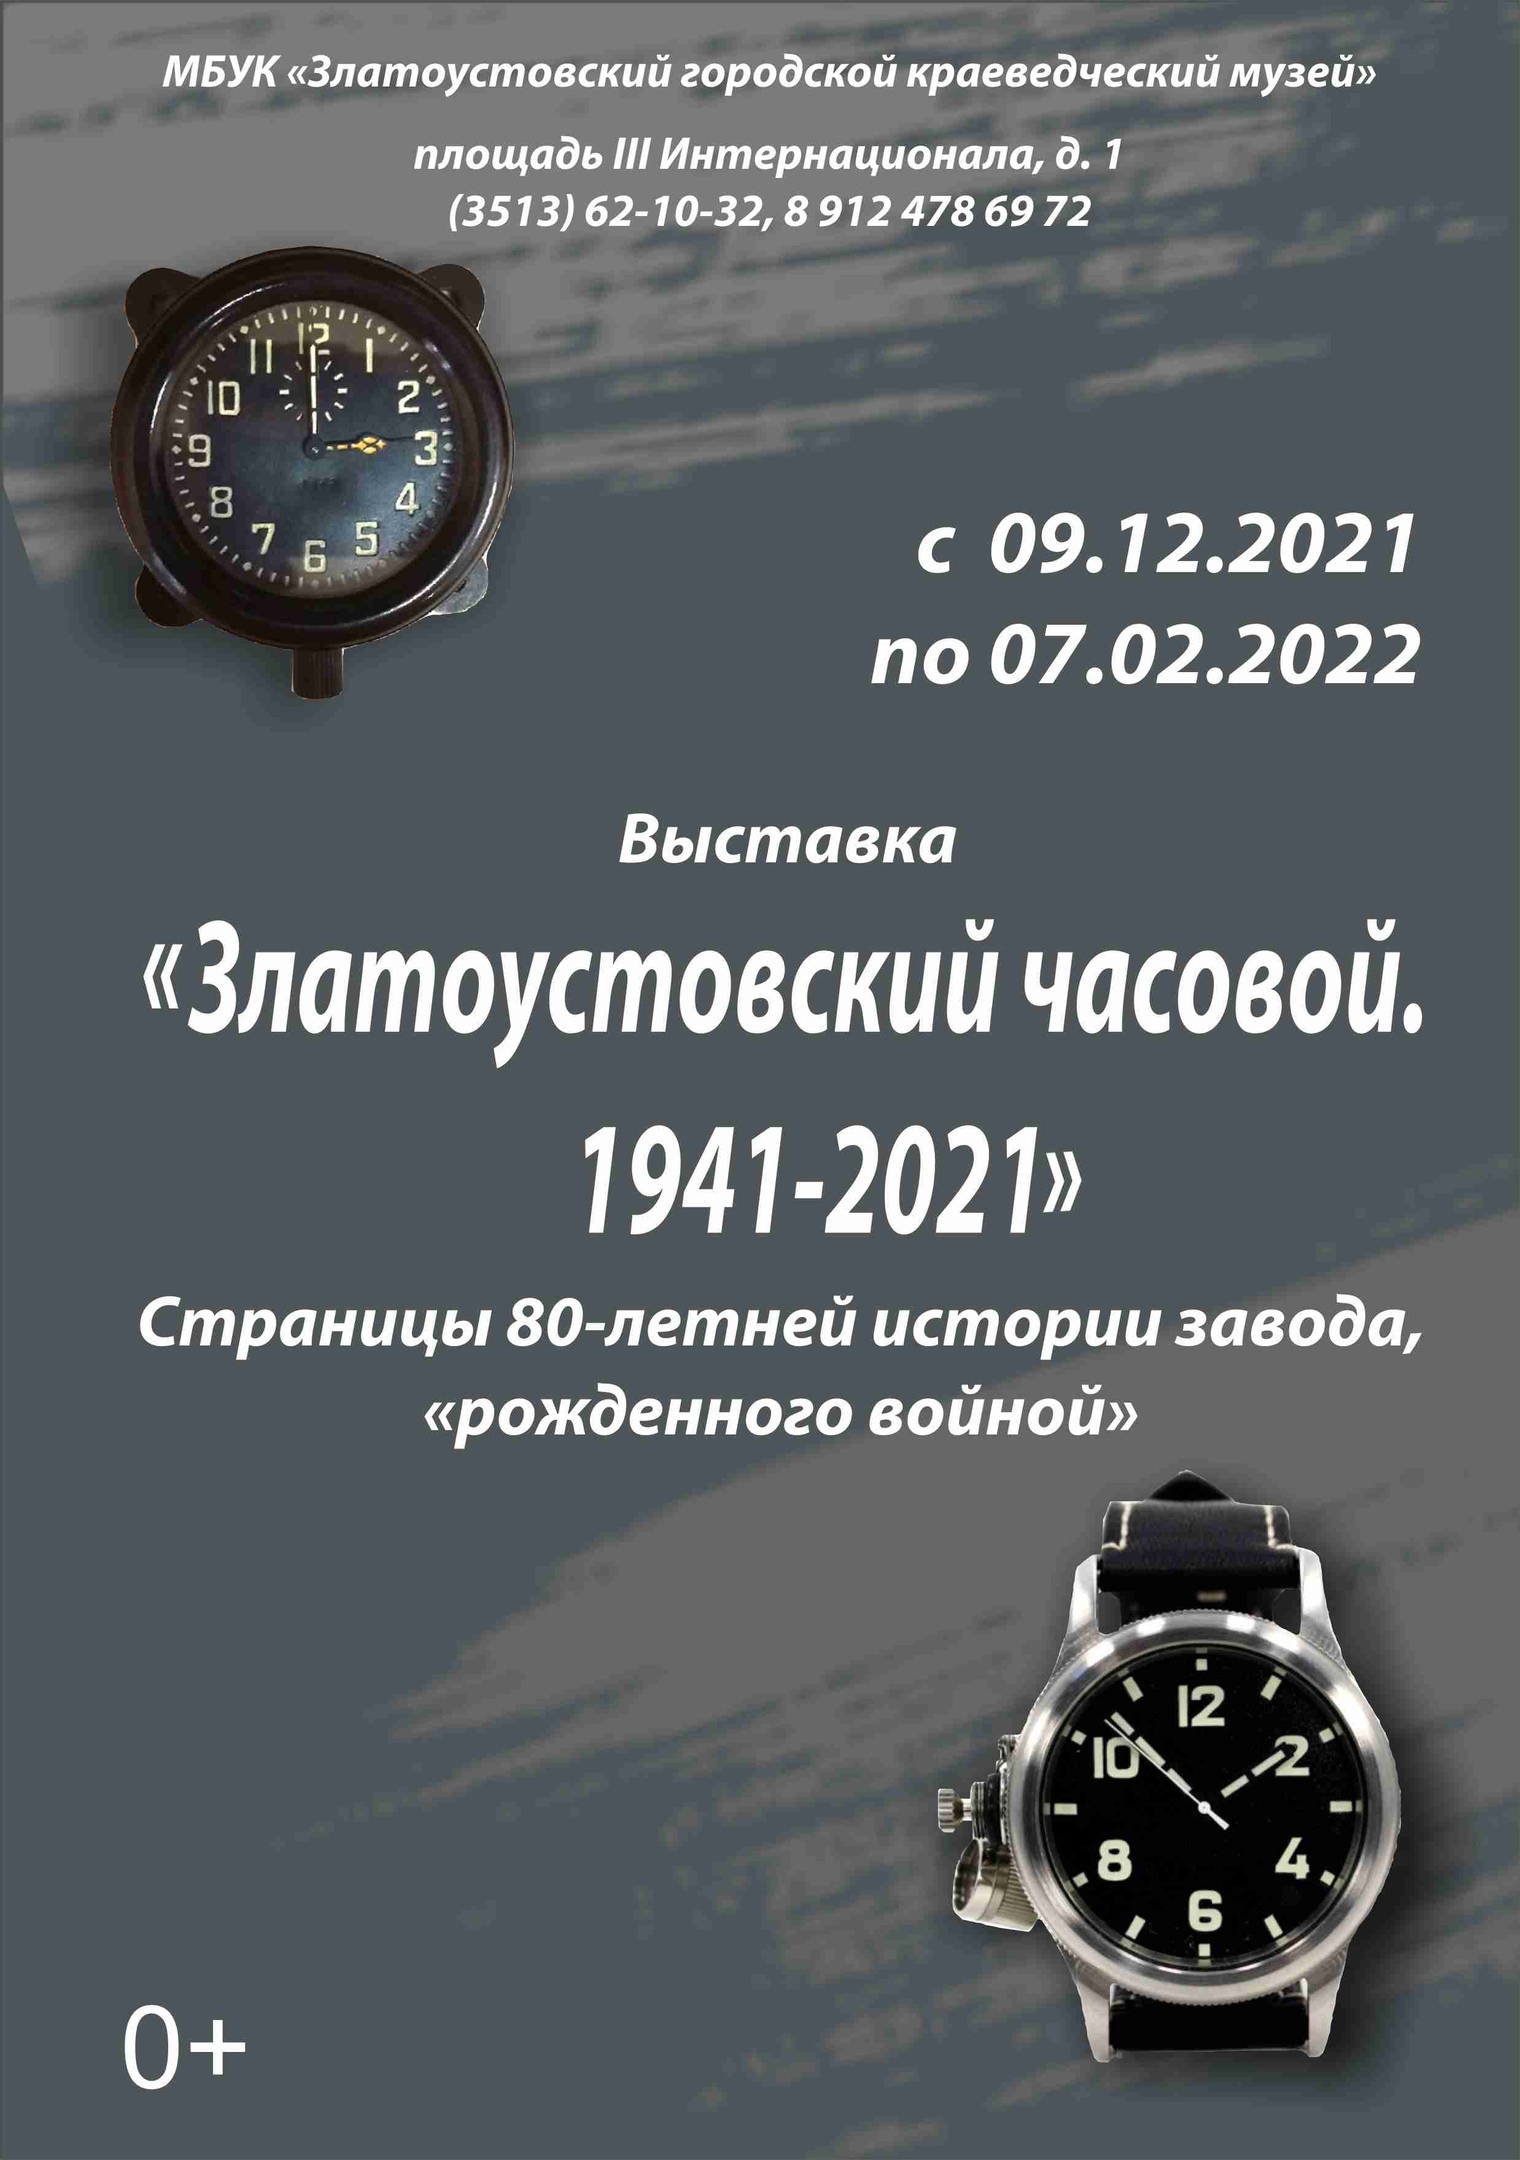 Выставка "Златоустовский часовой. 1941-2021"